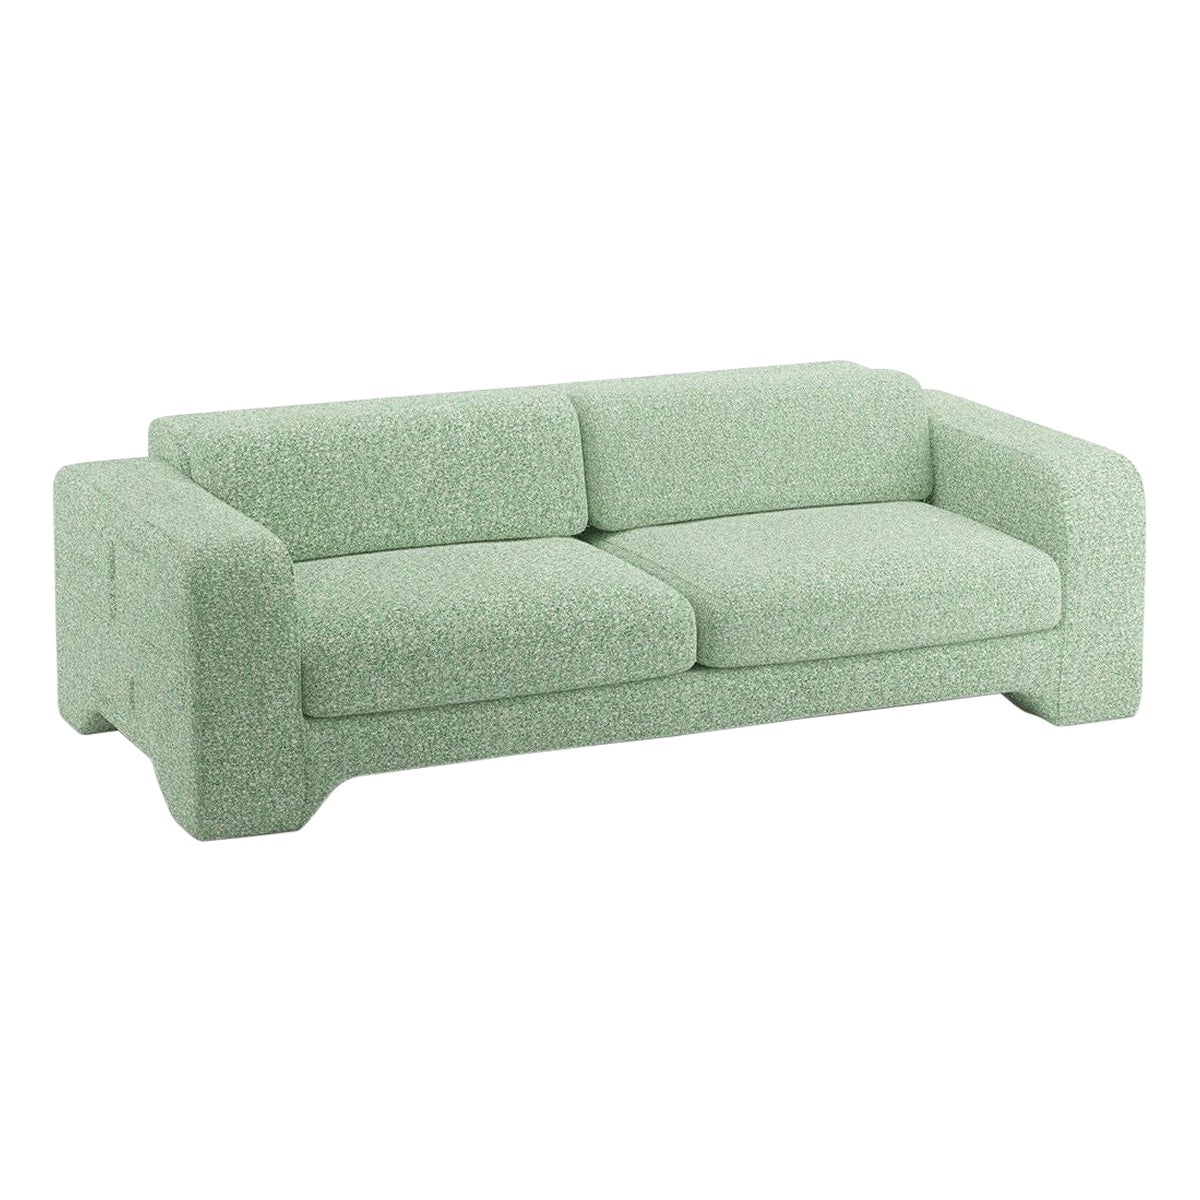 Popus Editions Giovanna 4 Seater Sofa in Grass Zanzi Linen Fabric For Sale